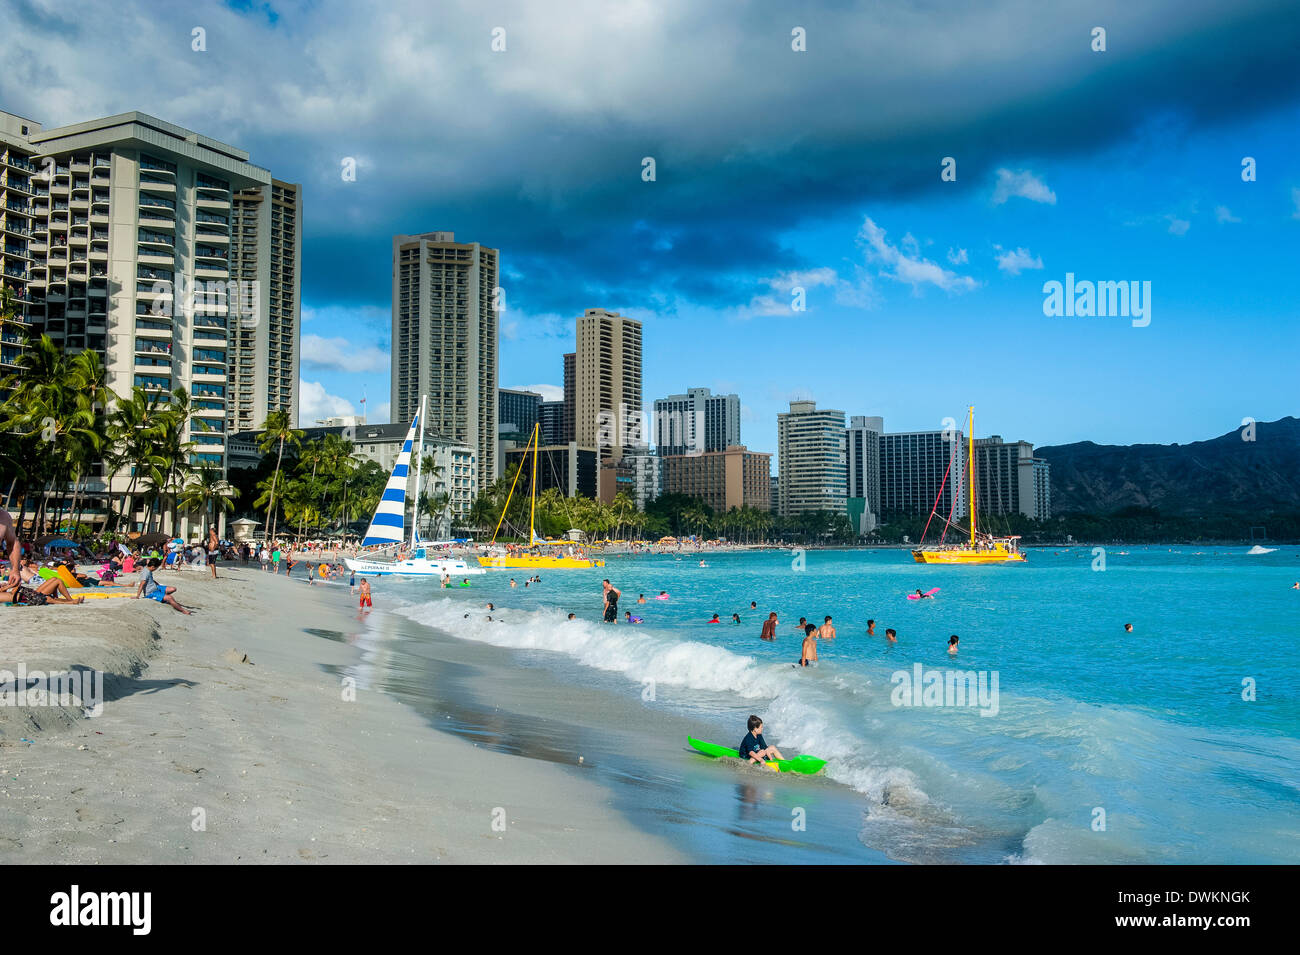 Des tours d'hôtels sur la plage de Waikiki, Oahu, Hawaii, United States of America, Pacifique Banque D'Images